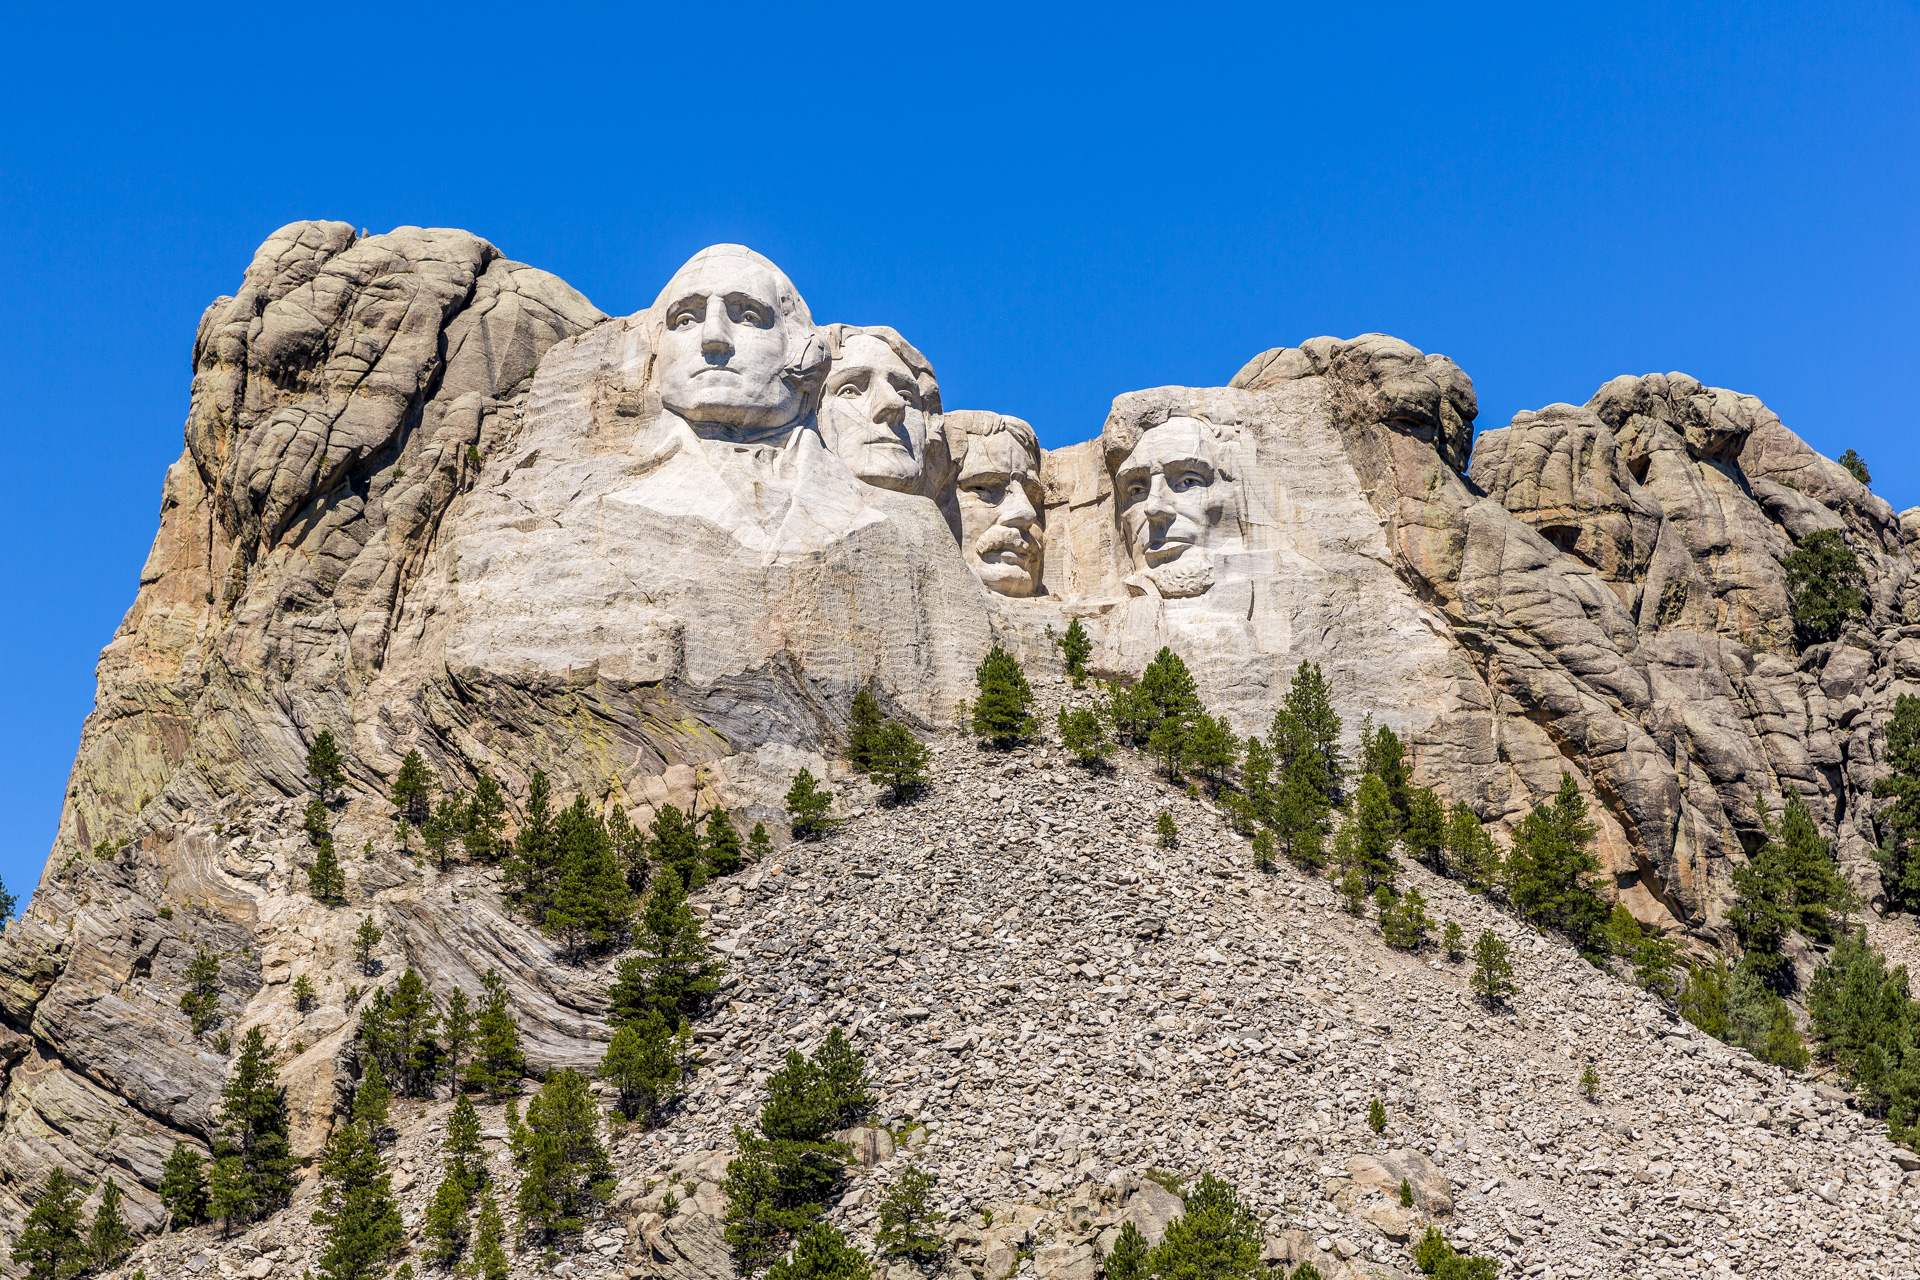 Mount Rushmore; Courtesy of John Brueske/Shutterstock